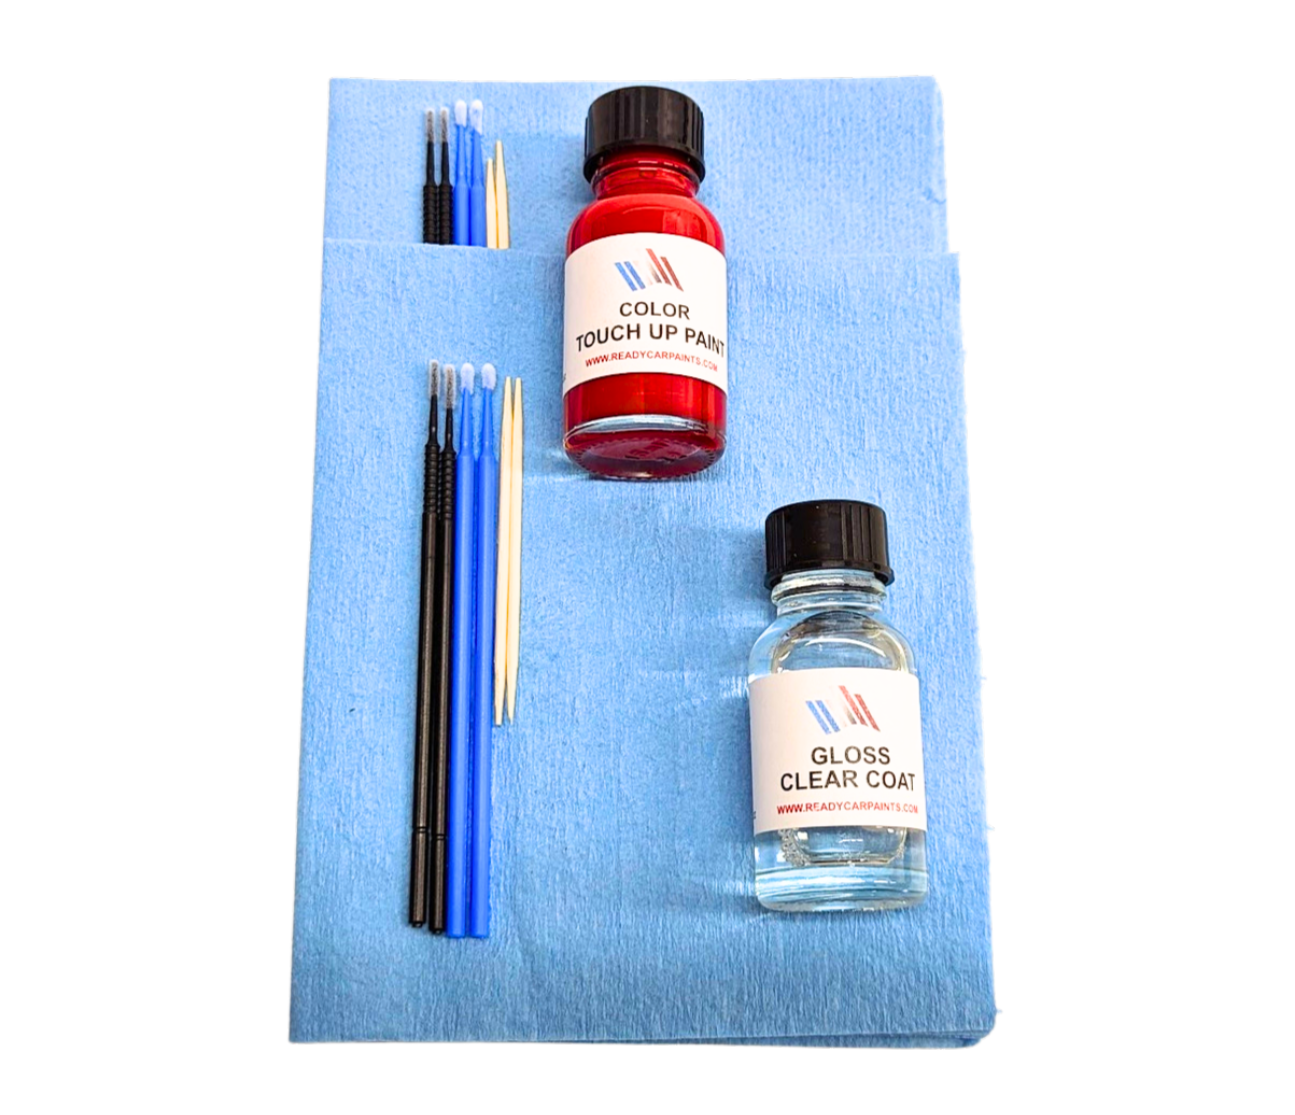 JAGUAR NMA/2355 Valloire White Satin Pearl Touch Up Paint Kit 100% OEM Color Match